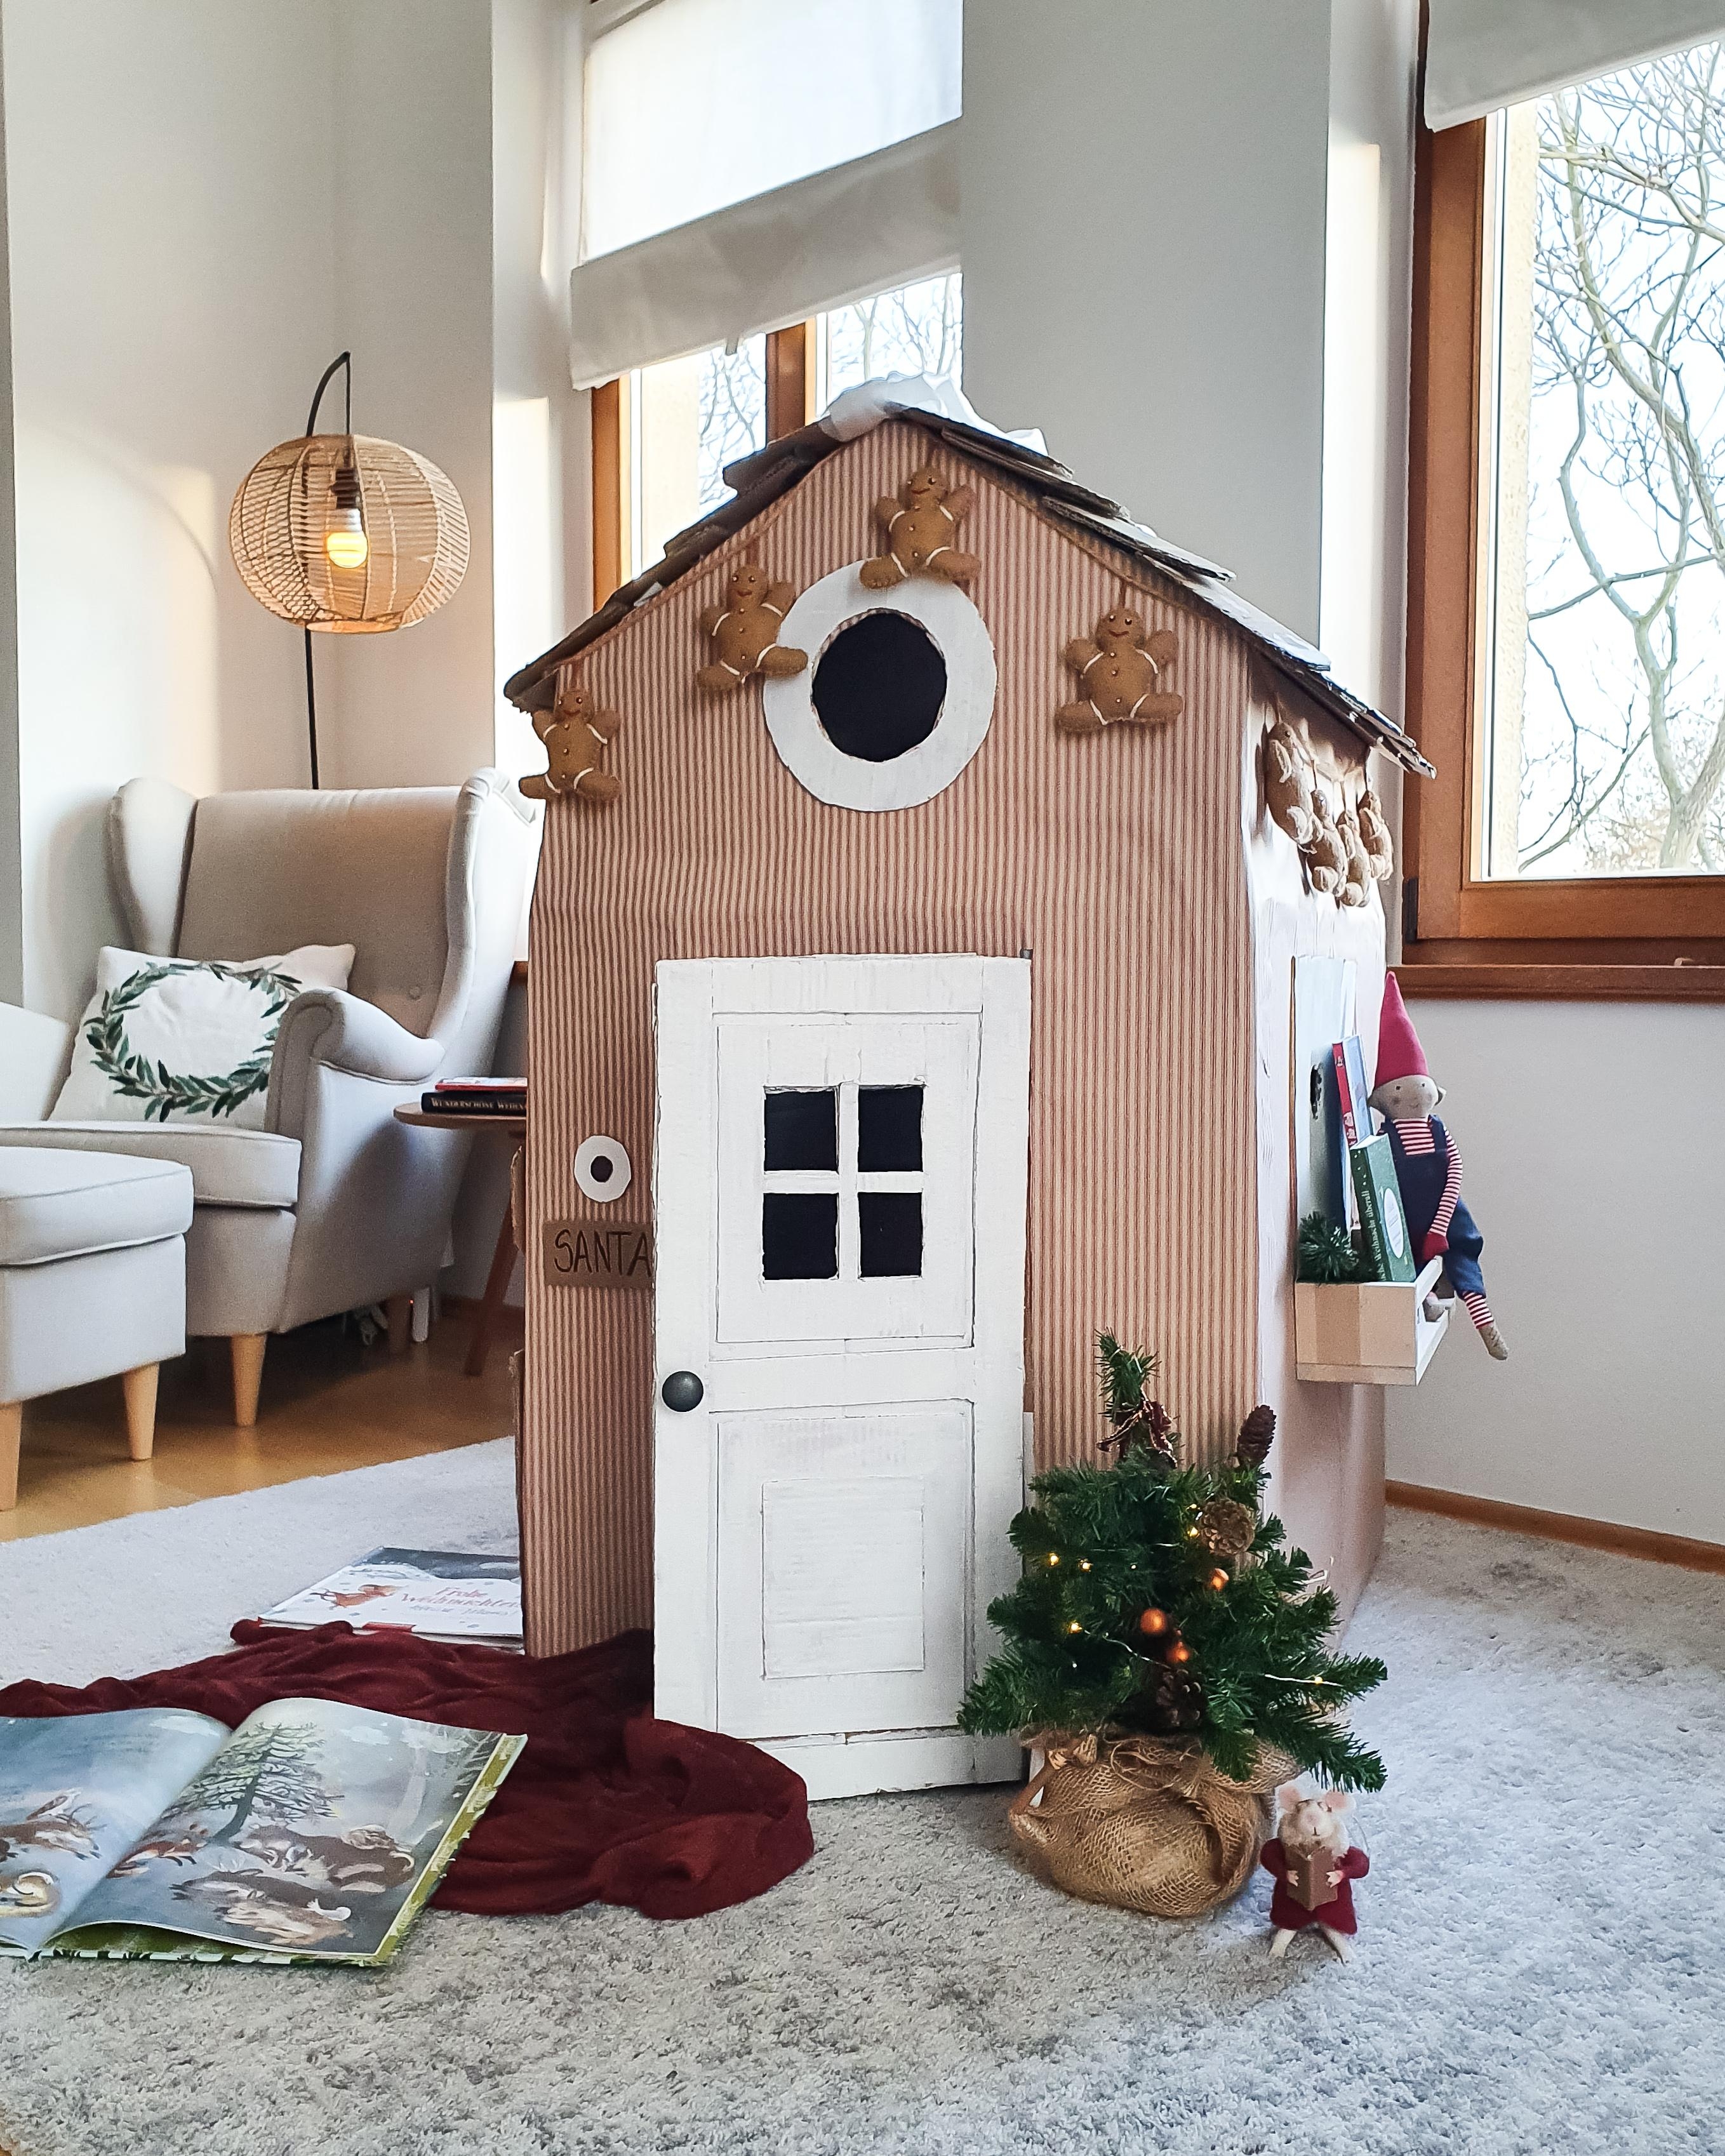 Kartonhaus weihnachtlich umdekoriert #diy #crafting #kidsroom